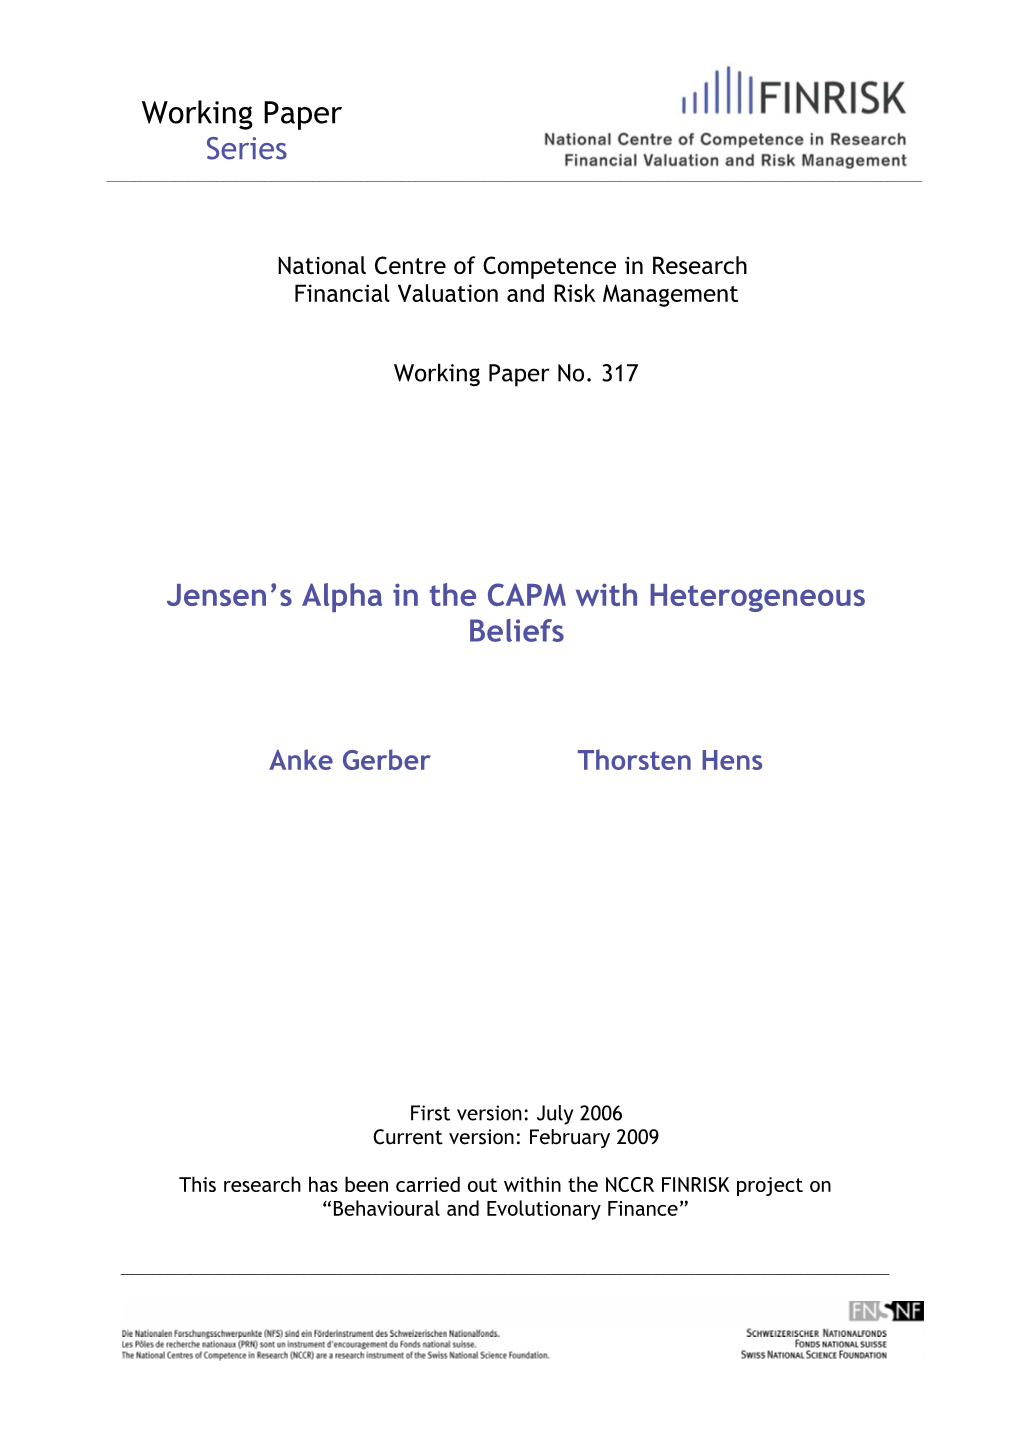 Working Paper Series Jensen's Alpha in the CAPM with Heterogeneous